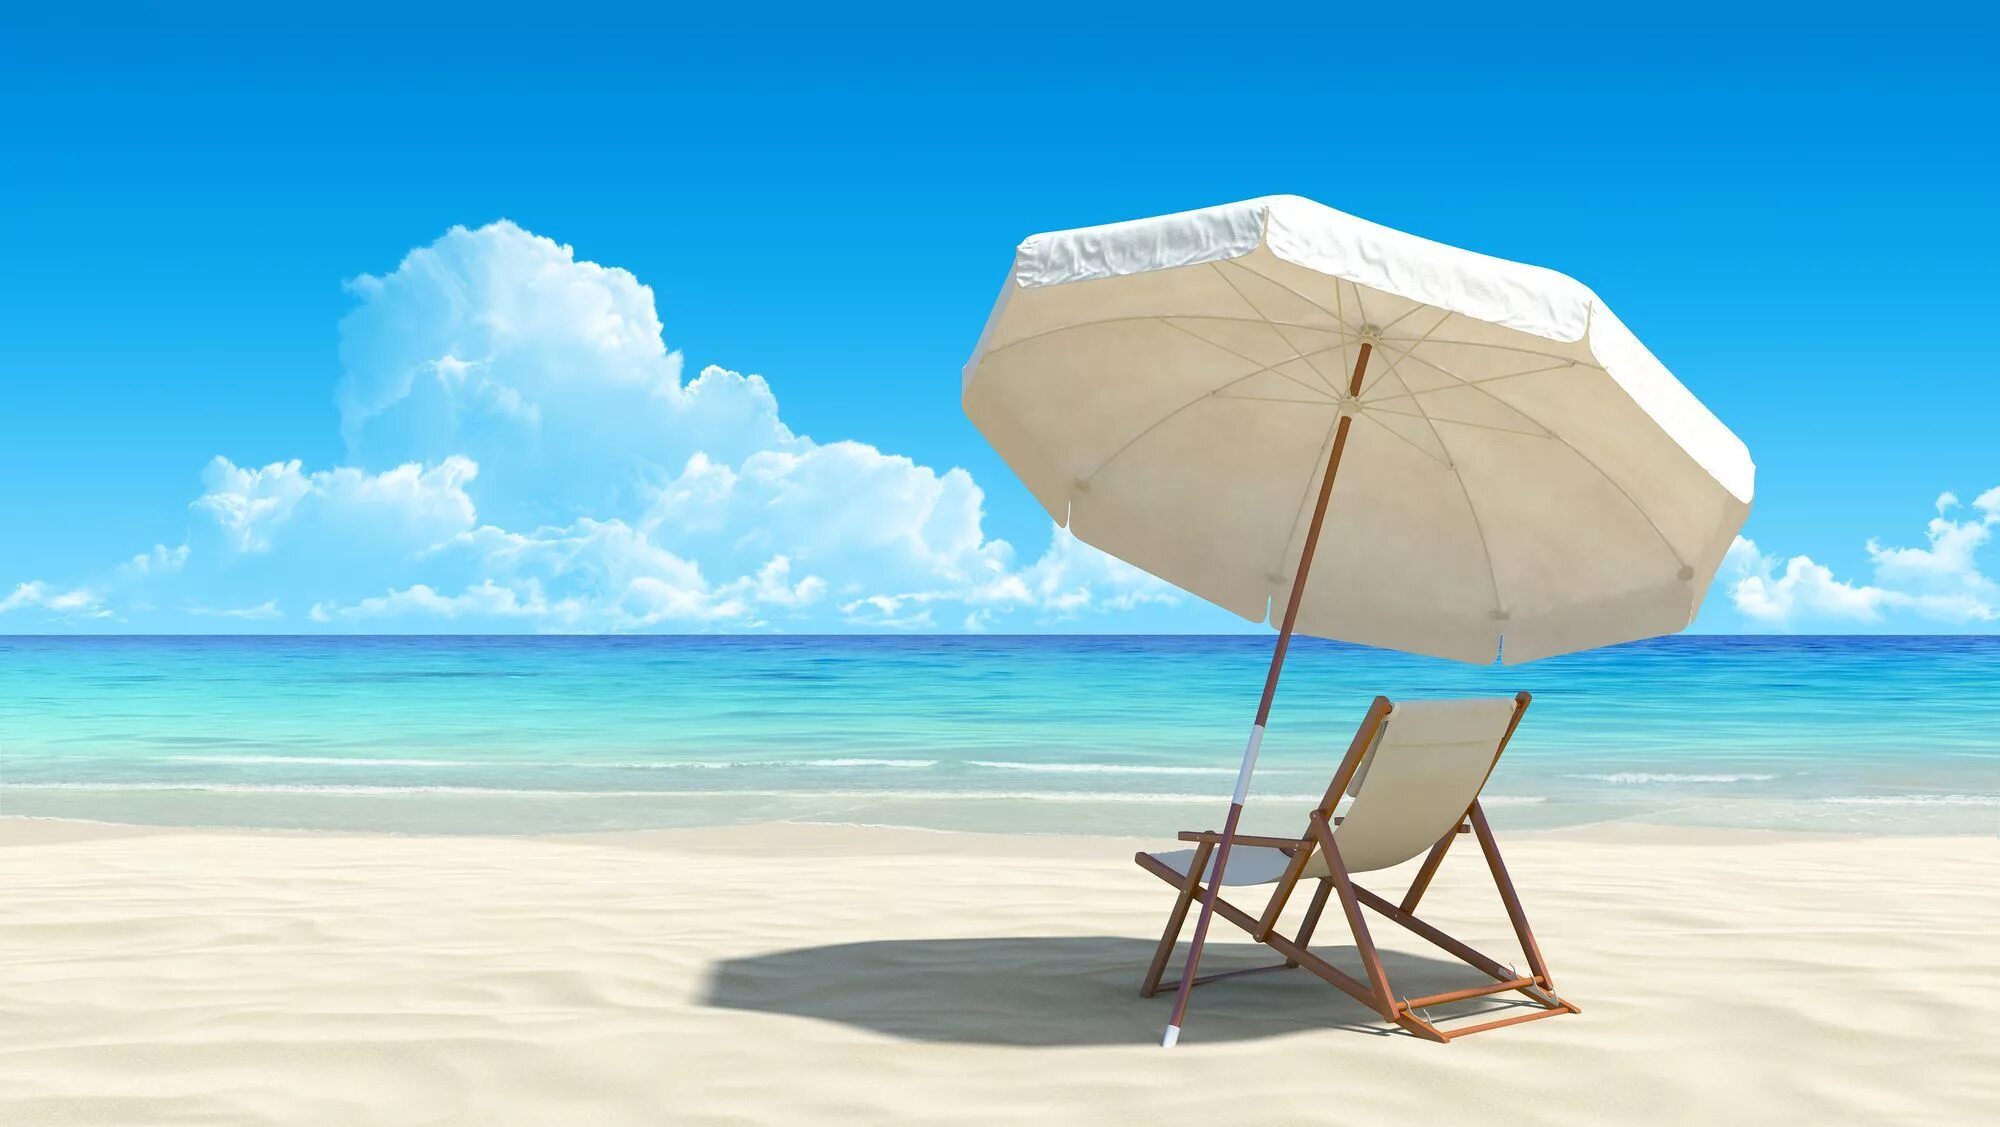 Дон релакс. Шезлонг на пляже. Зонт для пляжа. Пляж с лежаками и зонтами. Пляж зонтик шезлонг.